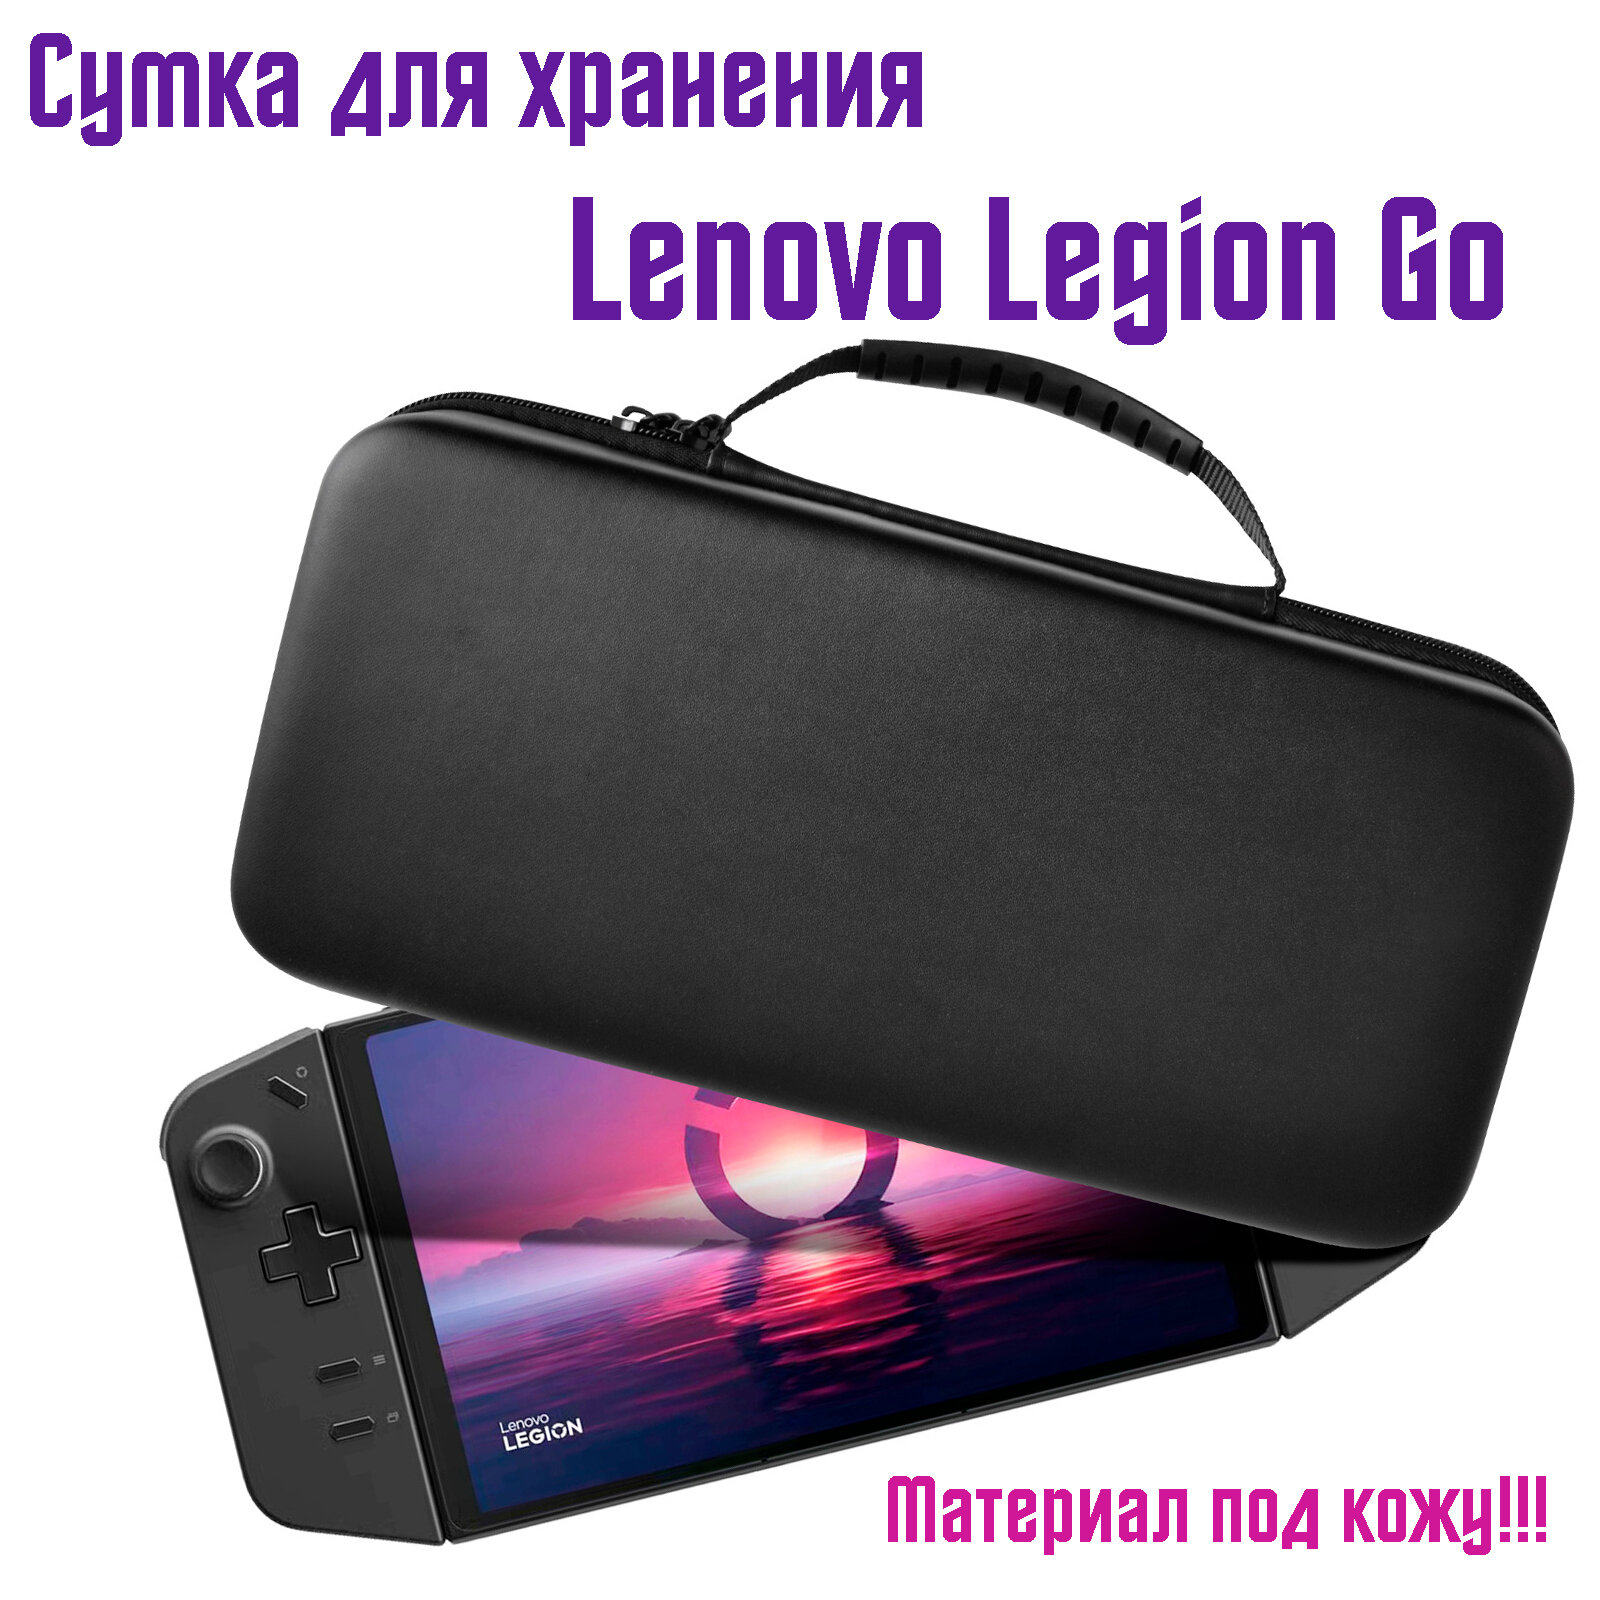 Портативная сумка для Lenovo Legion Go для хранения игровой консоли, черный